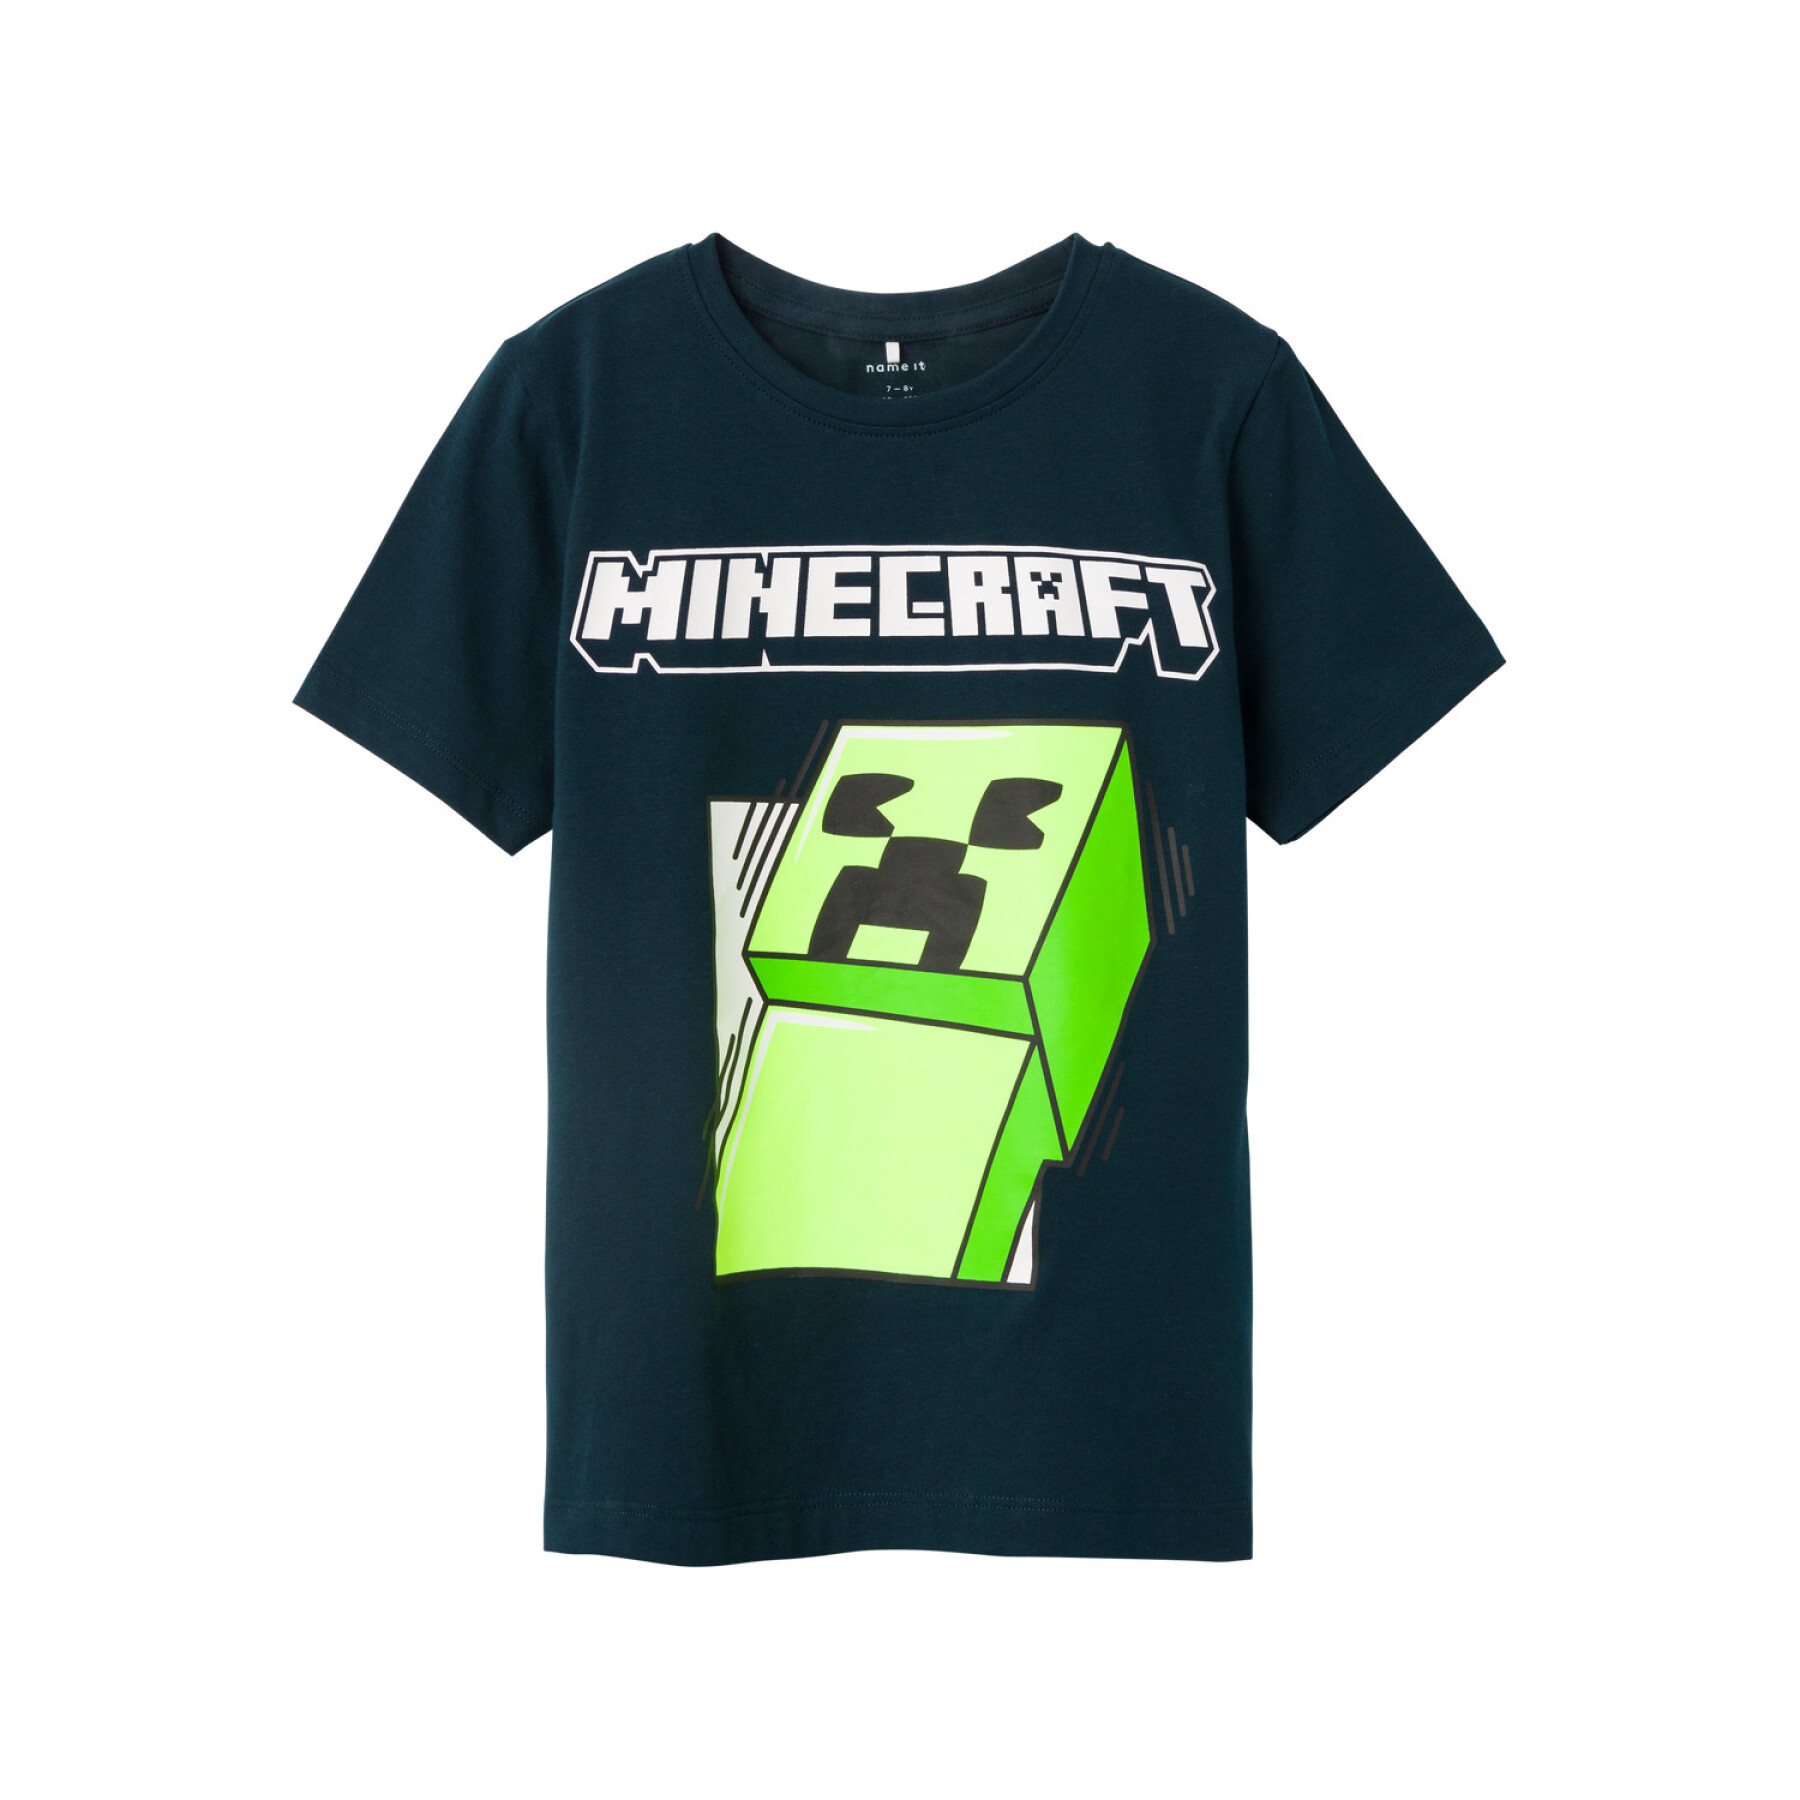 Camiseta infantil Name it Mobin Minecraft